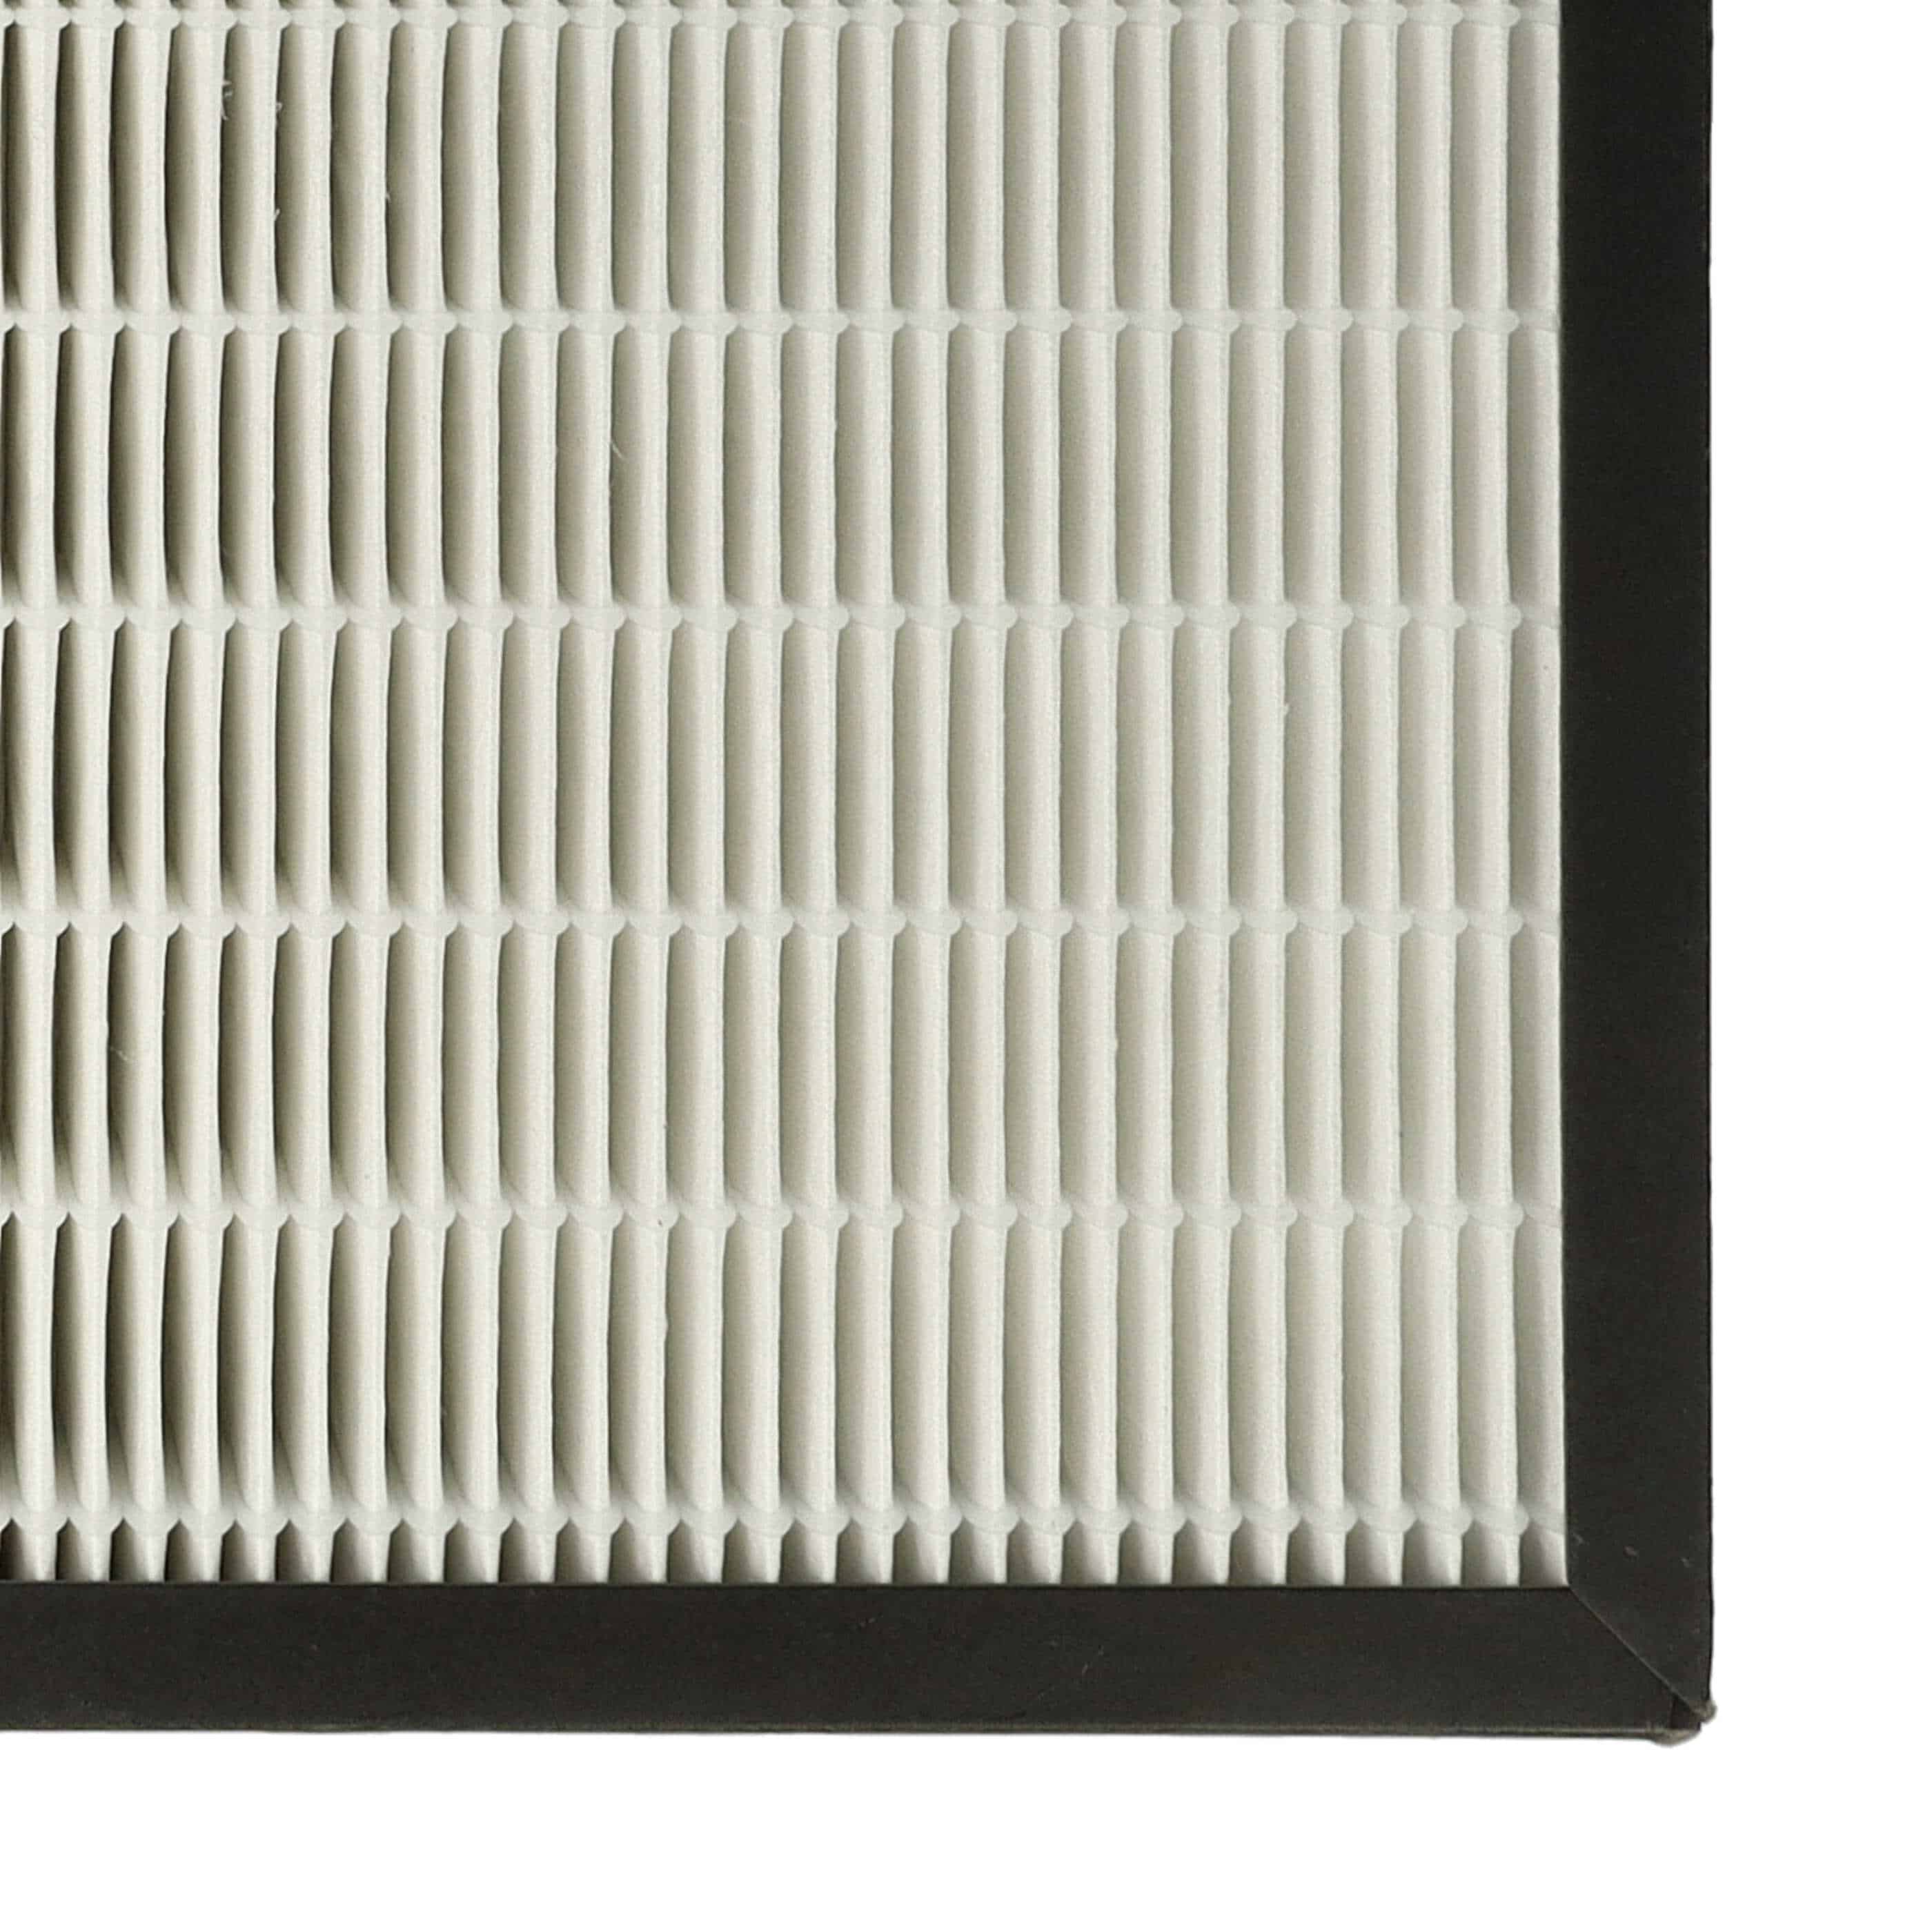 Filtre remplace Philips AC4158/00 purificateur - HEPA + charbon actif, 31,5 x 29 x 4cm